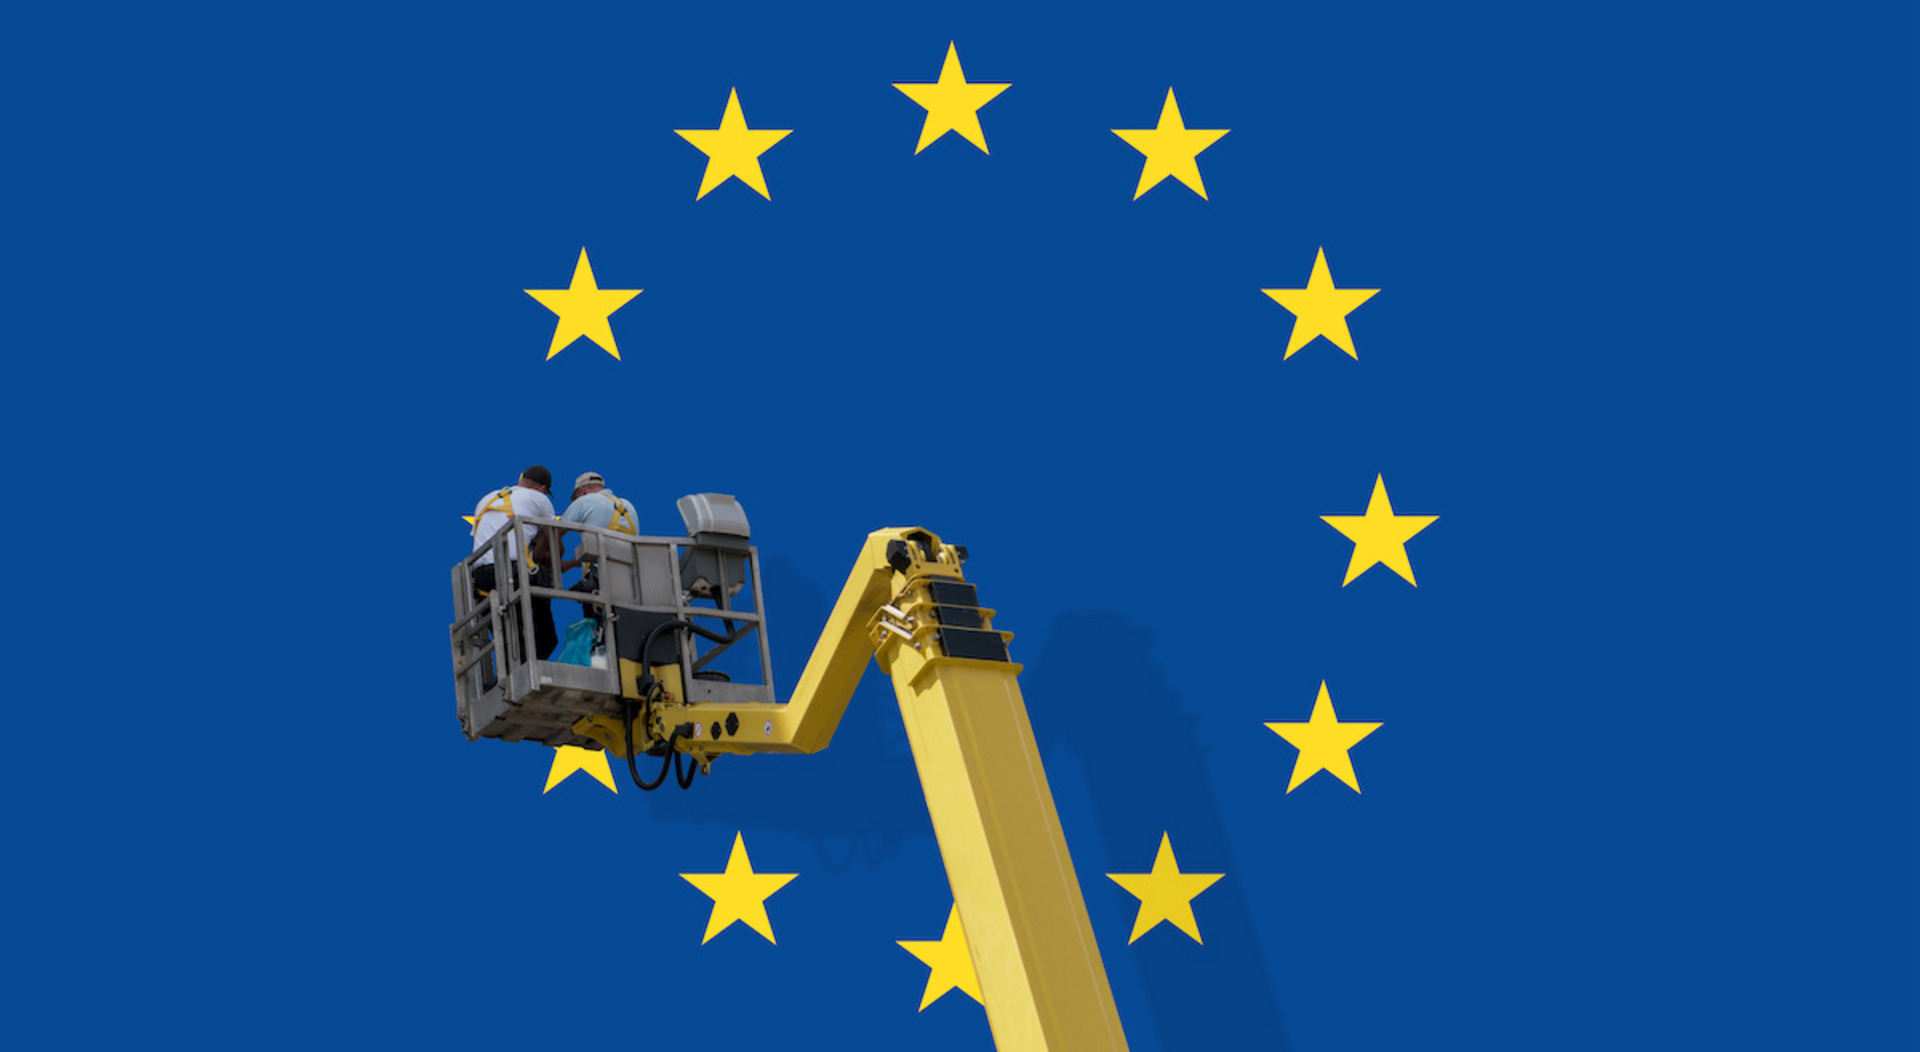 Kran vor einer EU-Flagge